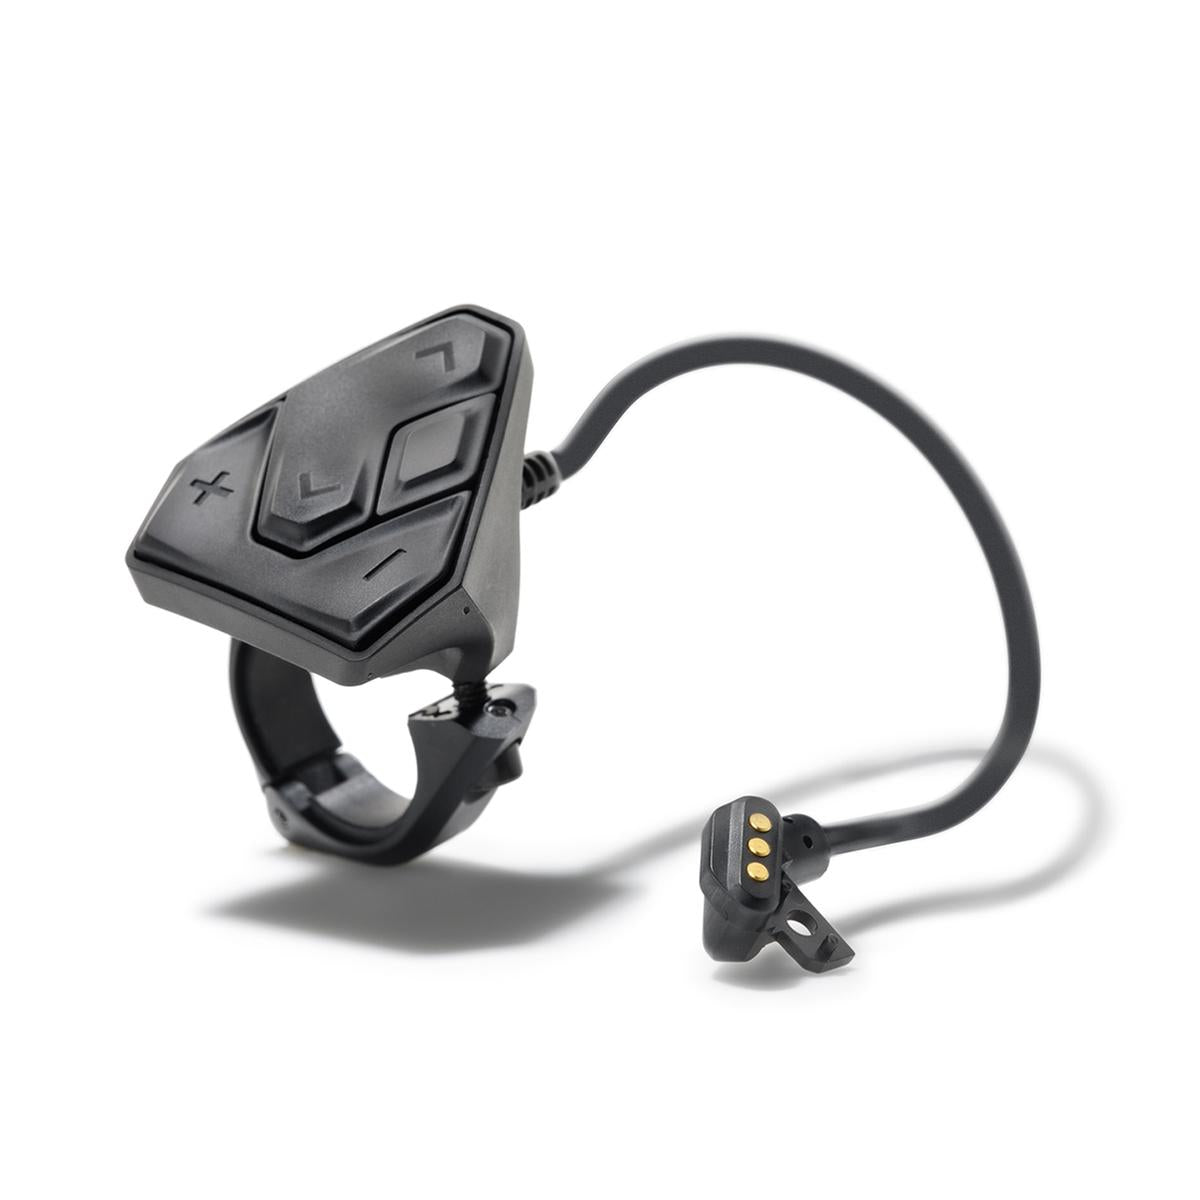 Bosch Kiox Compact Bedieneinheit inkl. Anschlusskabel für E-Bike System 2 schwarz